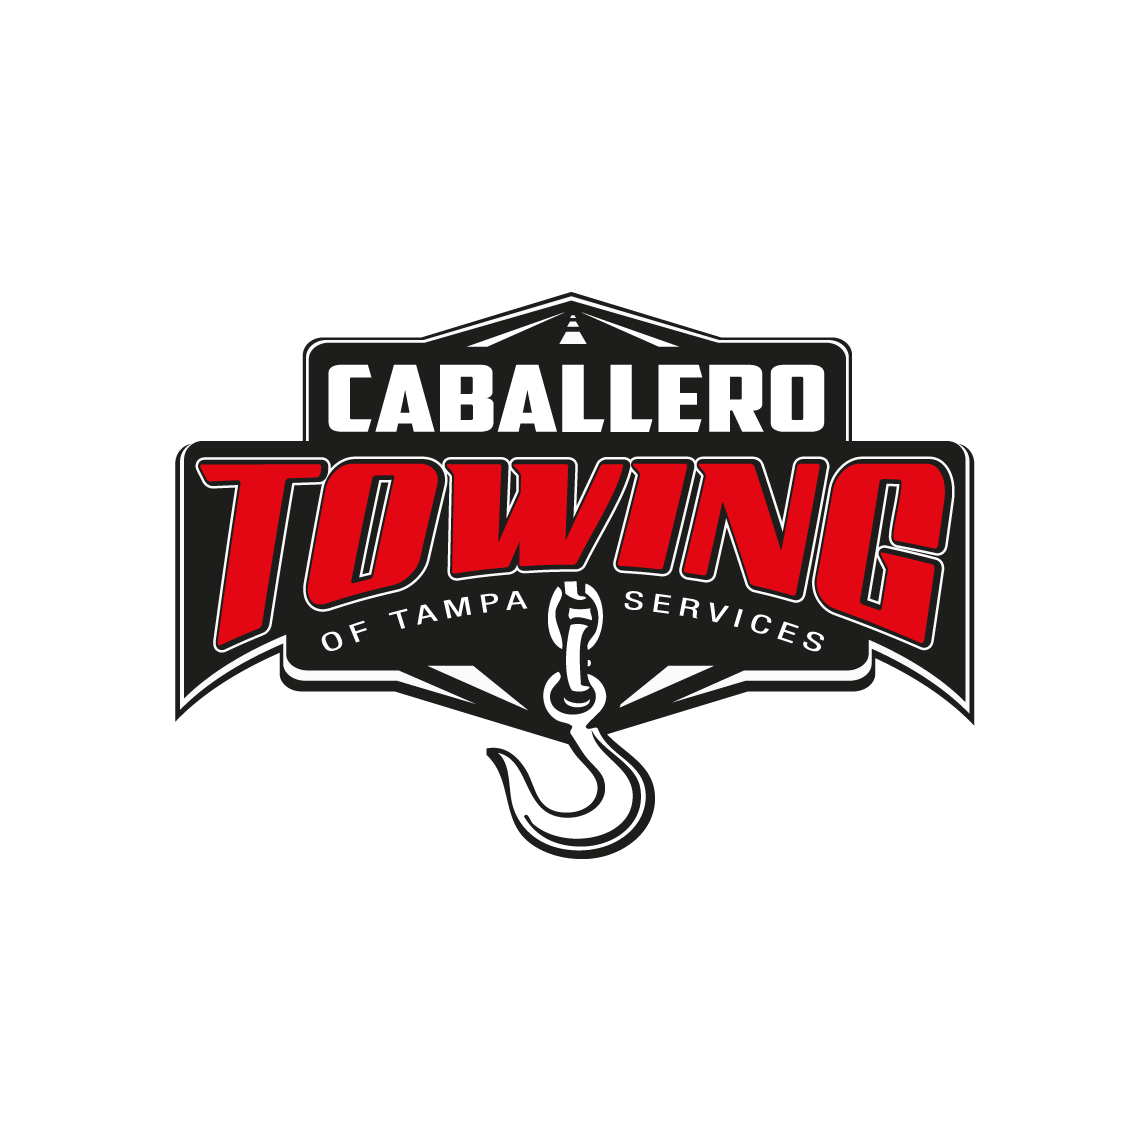 Caballero Towing - Brandon, FL - (813)842-5185 | ShowMeLocal.com